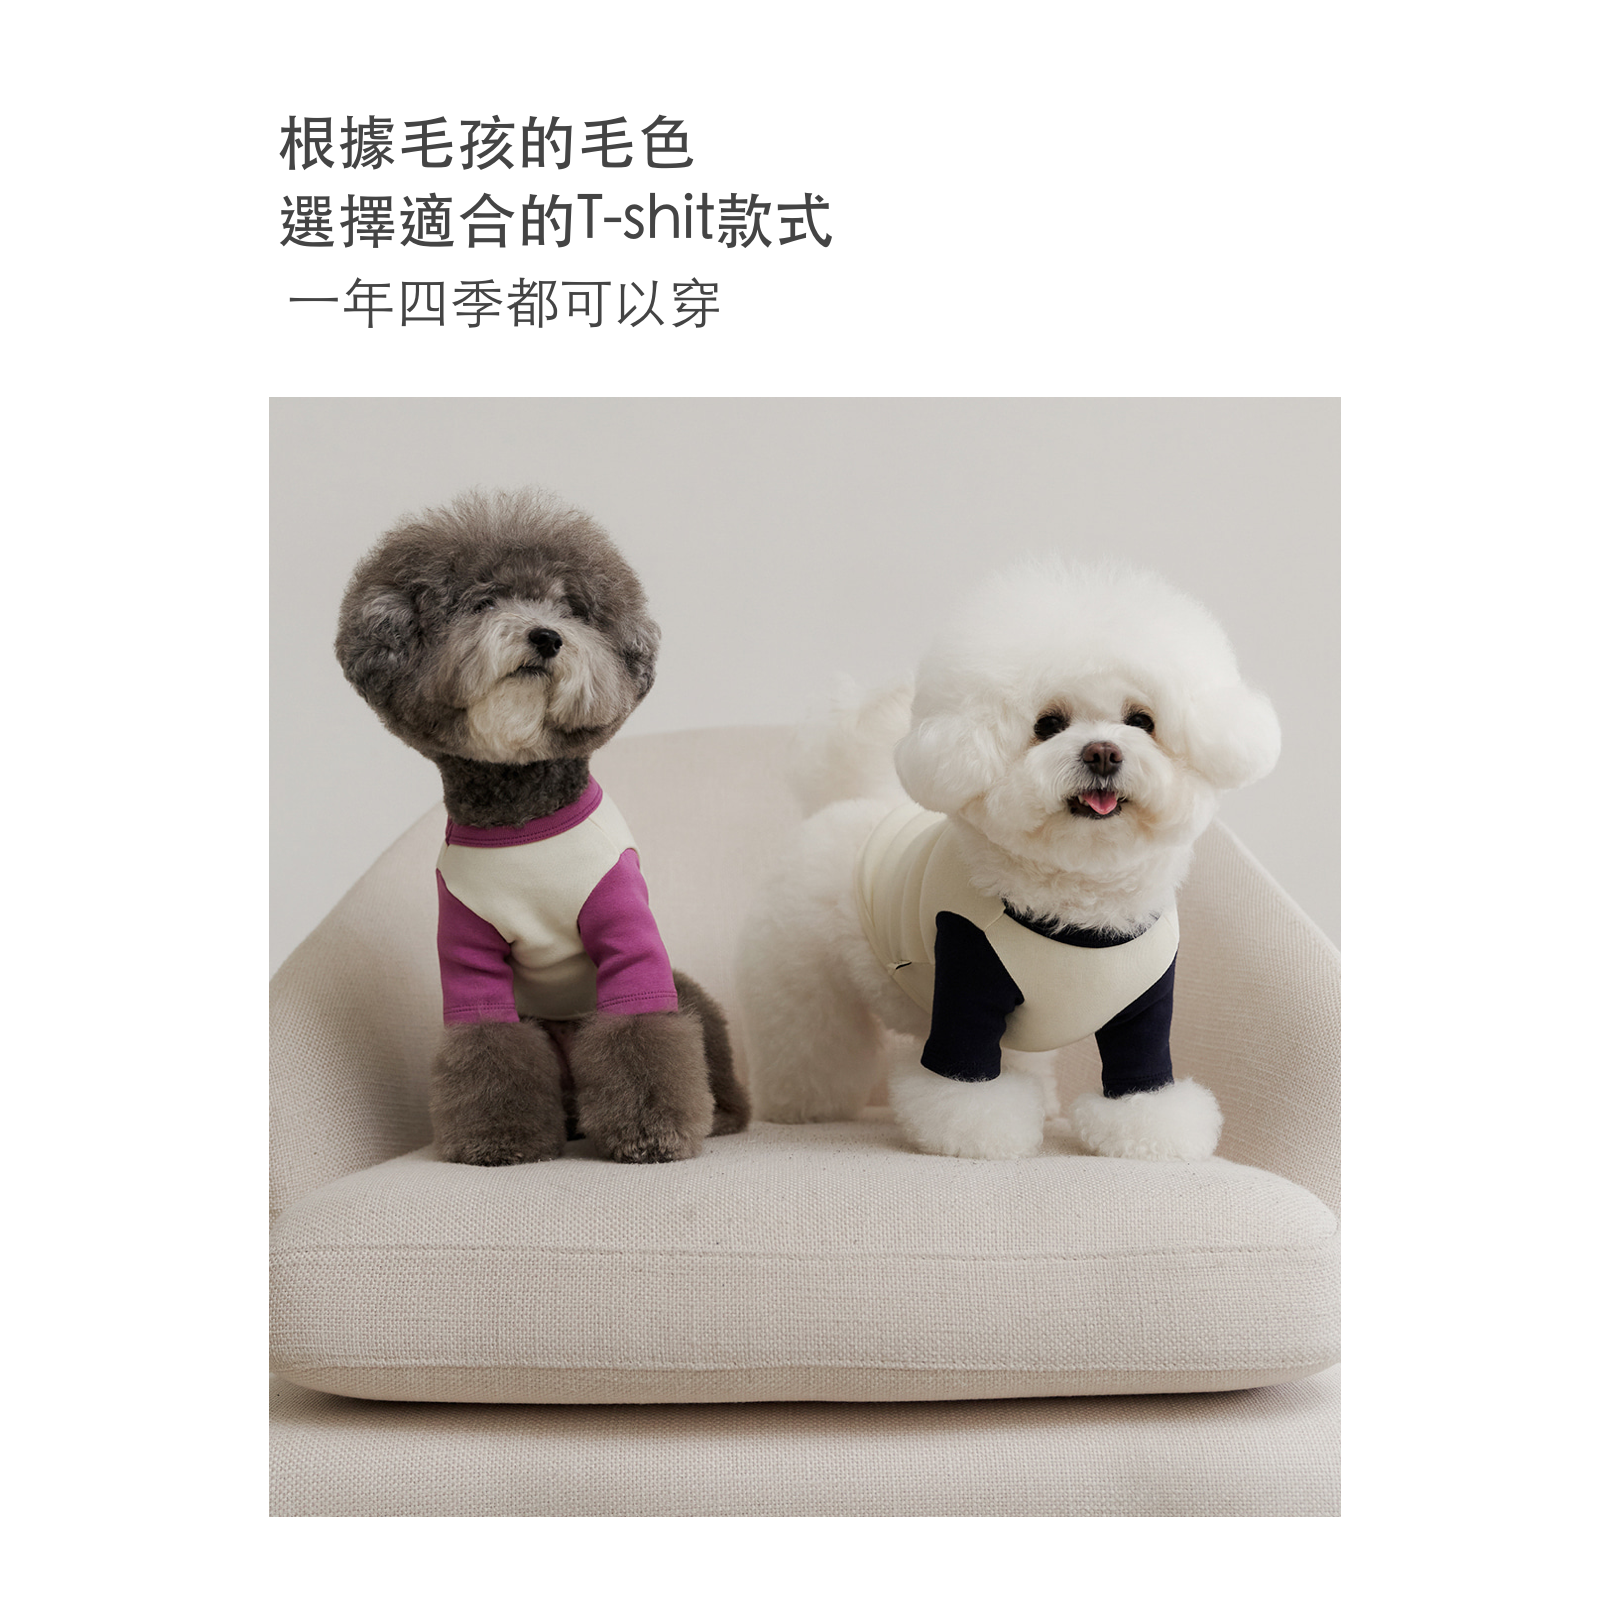 韓國 likalika 經典款 logo 寵物衣服